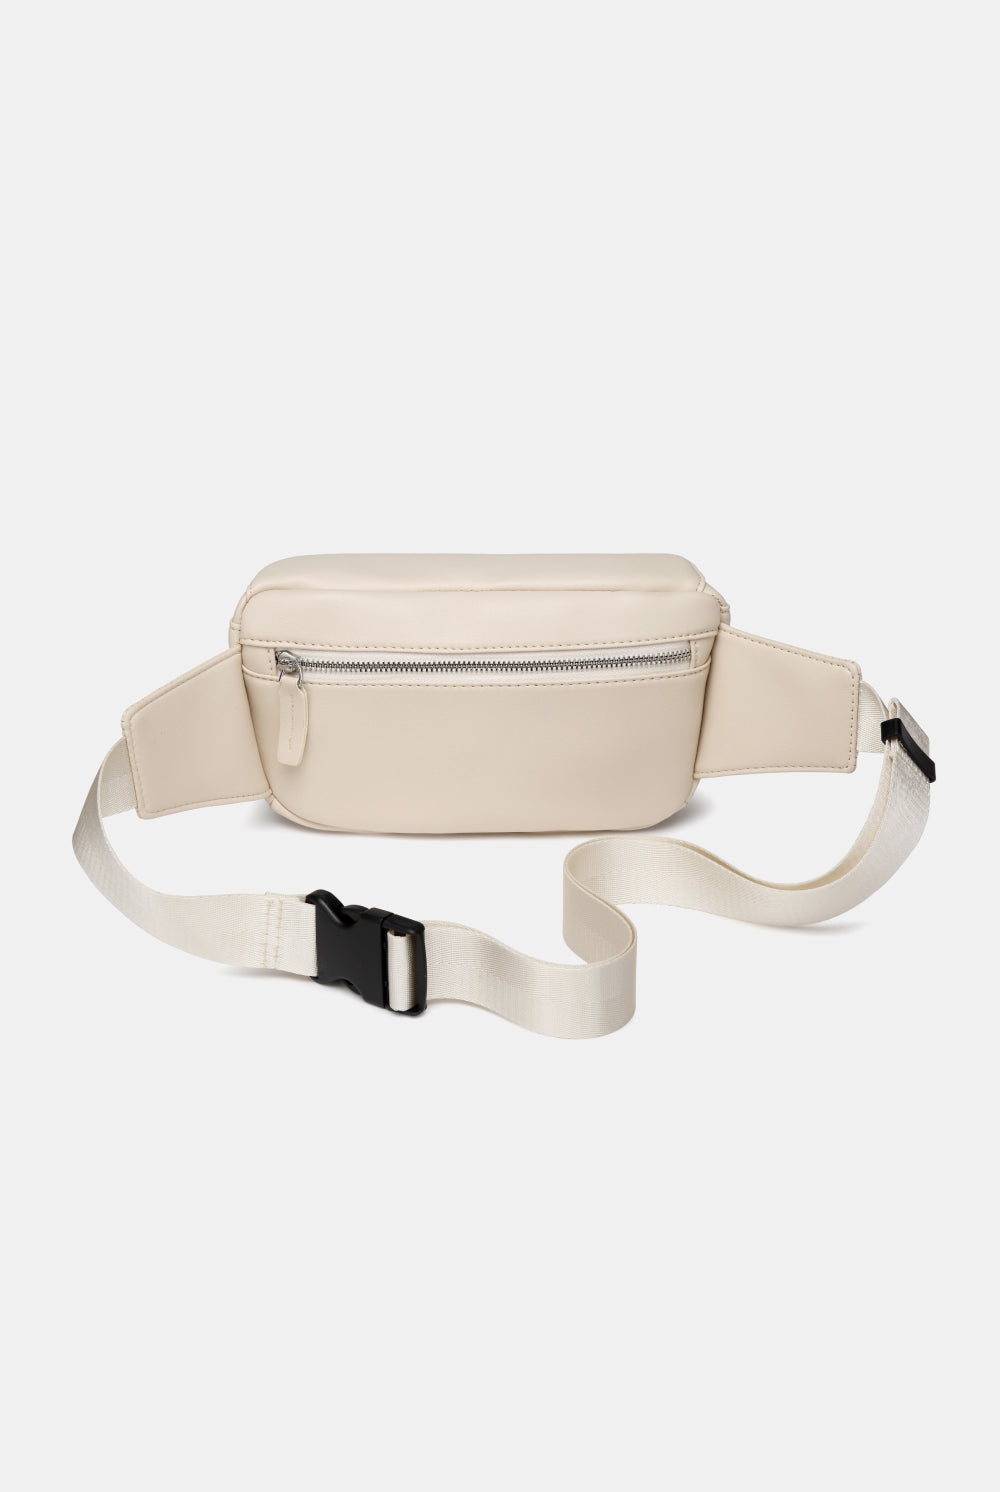 White Smoke Small PU leather Sling Bag Handbags